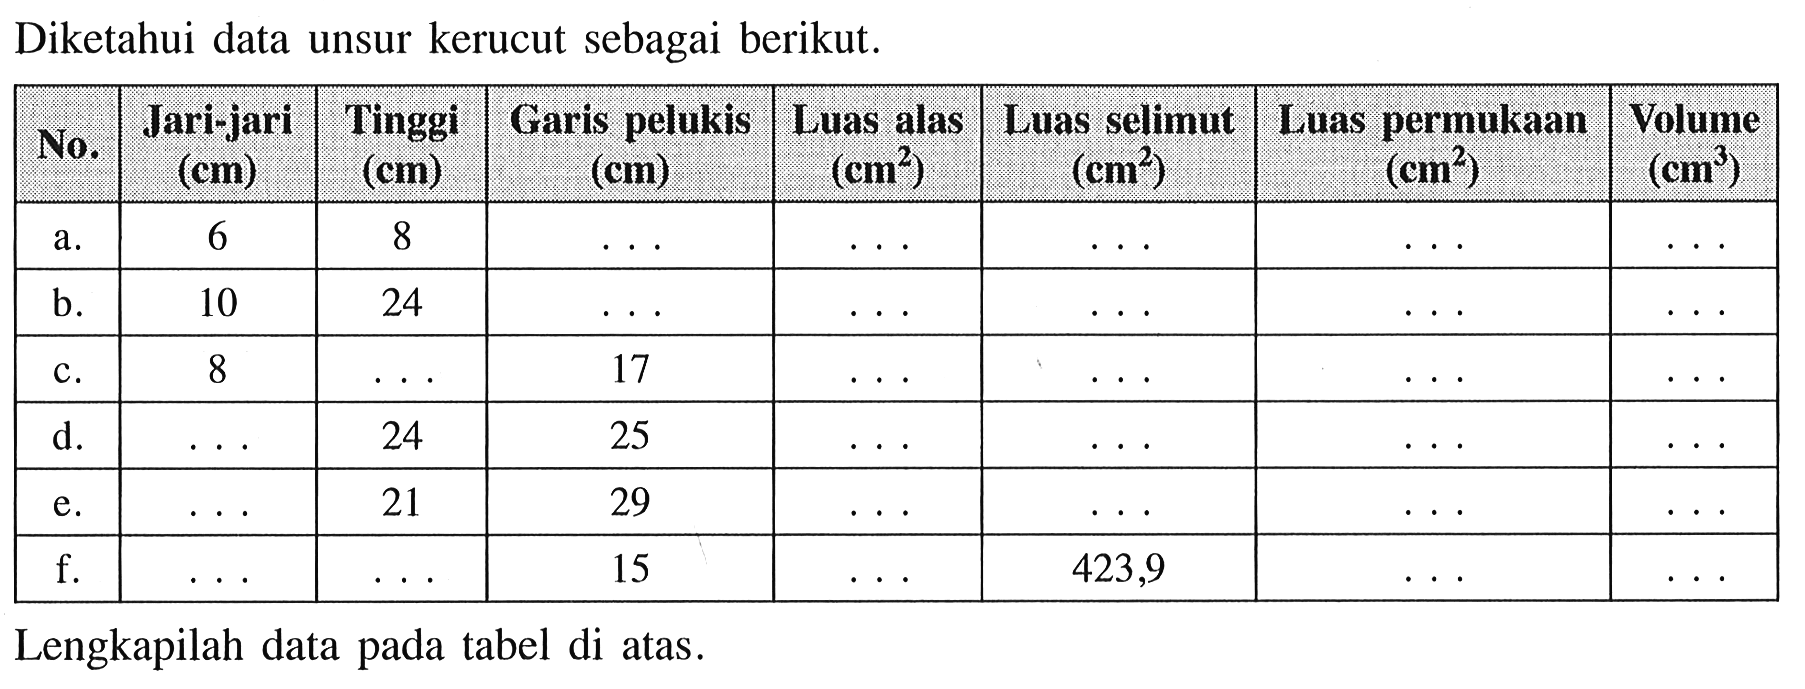 Diketahui data unsur kerucut sebagai berikut. No. Jari-jari (cm) Tinggi (cm) Garis pelukis (cm) Luas alas (cm^2) Luas selimut (cm^2) Luas permukaan (cm^2) Volume (cm^3) a. 6 8 b. 10 24 c. 8 17 d. 24 25 e. 21 29 f. 15 423,9